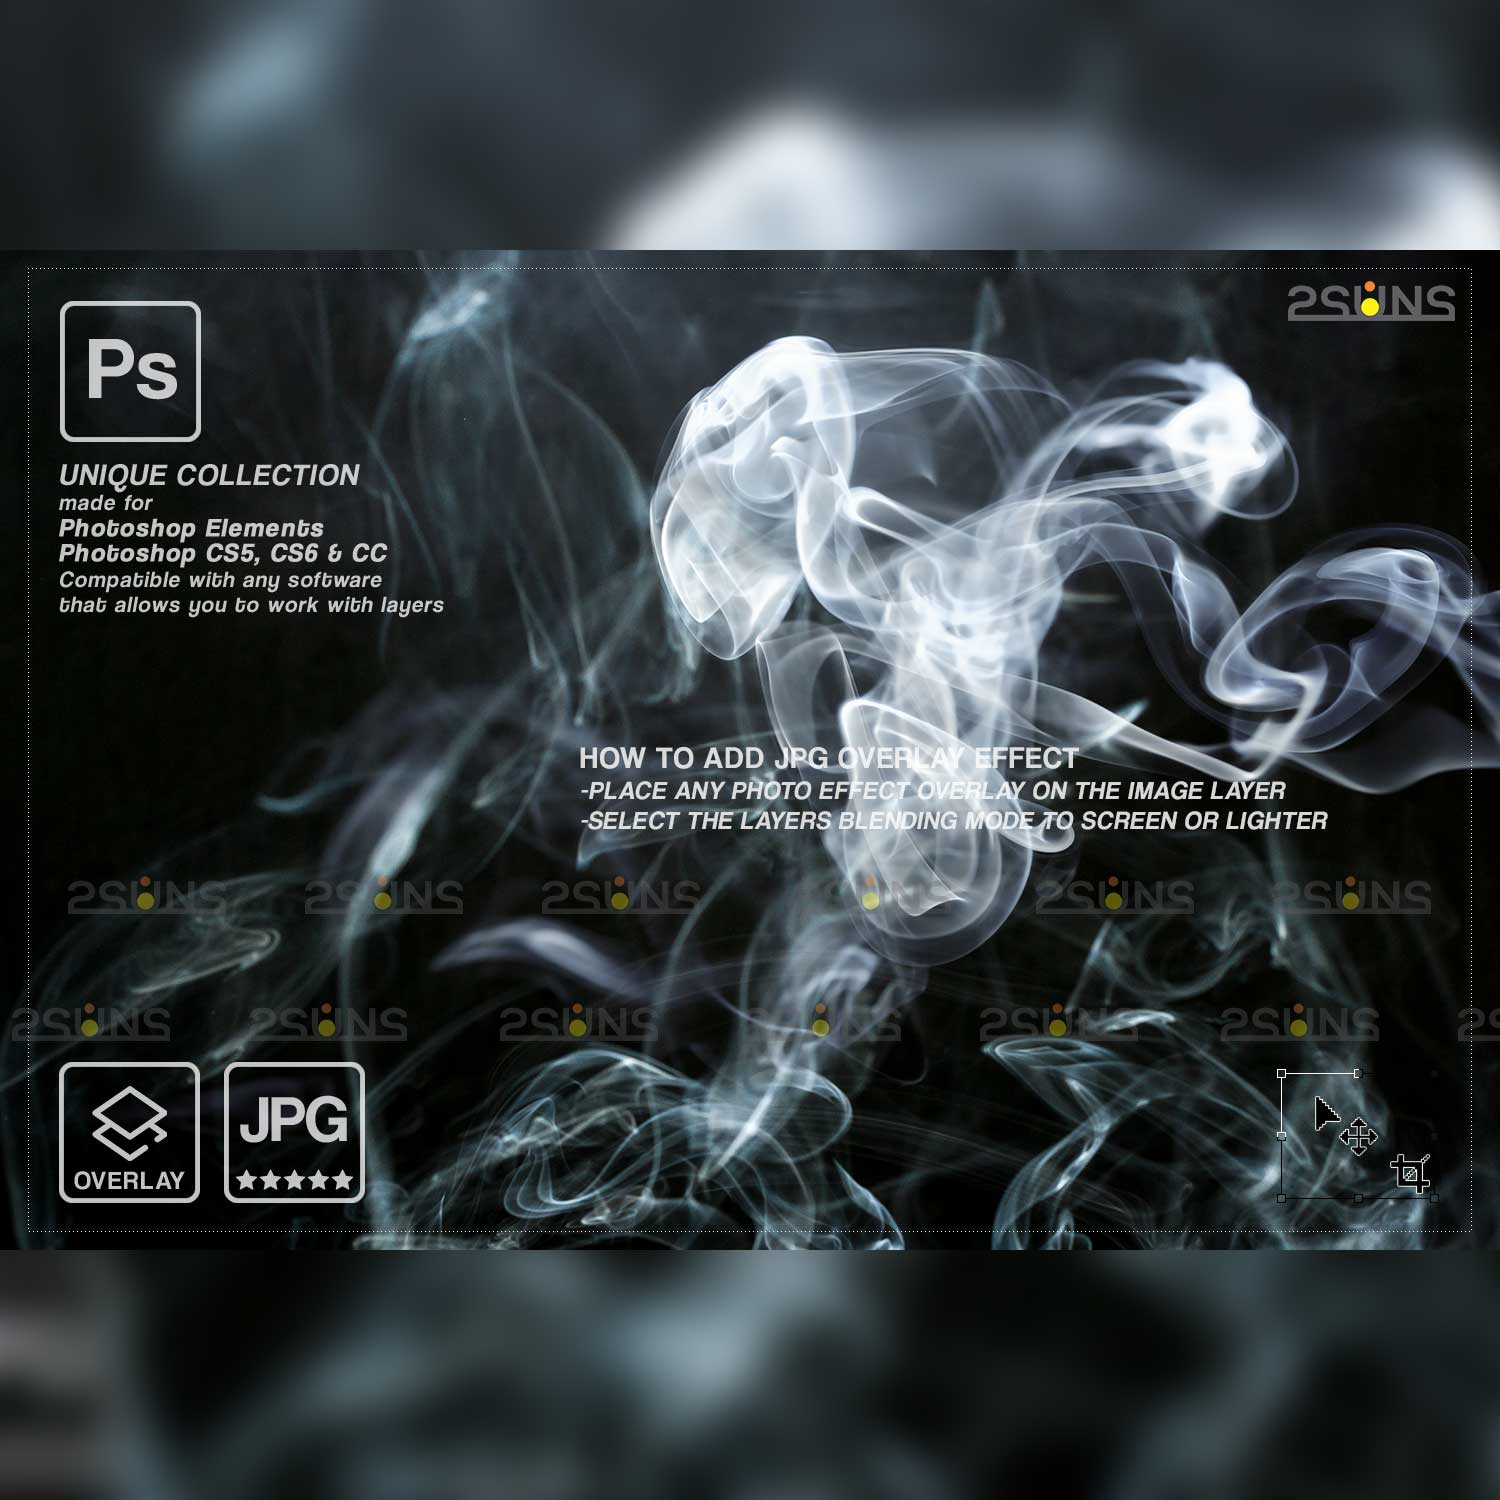 Fog Smoke Backgrounds Photoshop Overlays cover image.